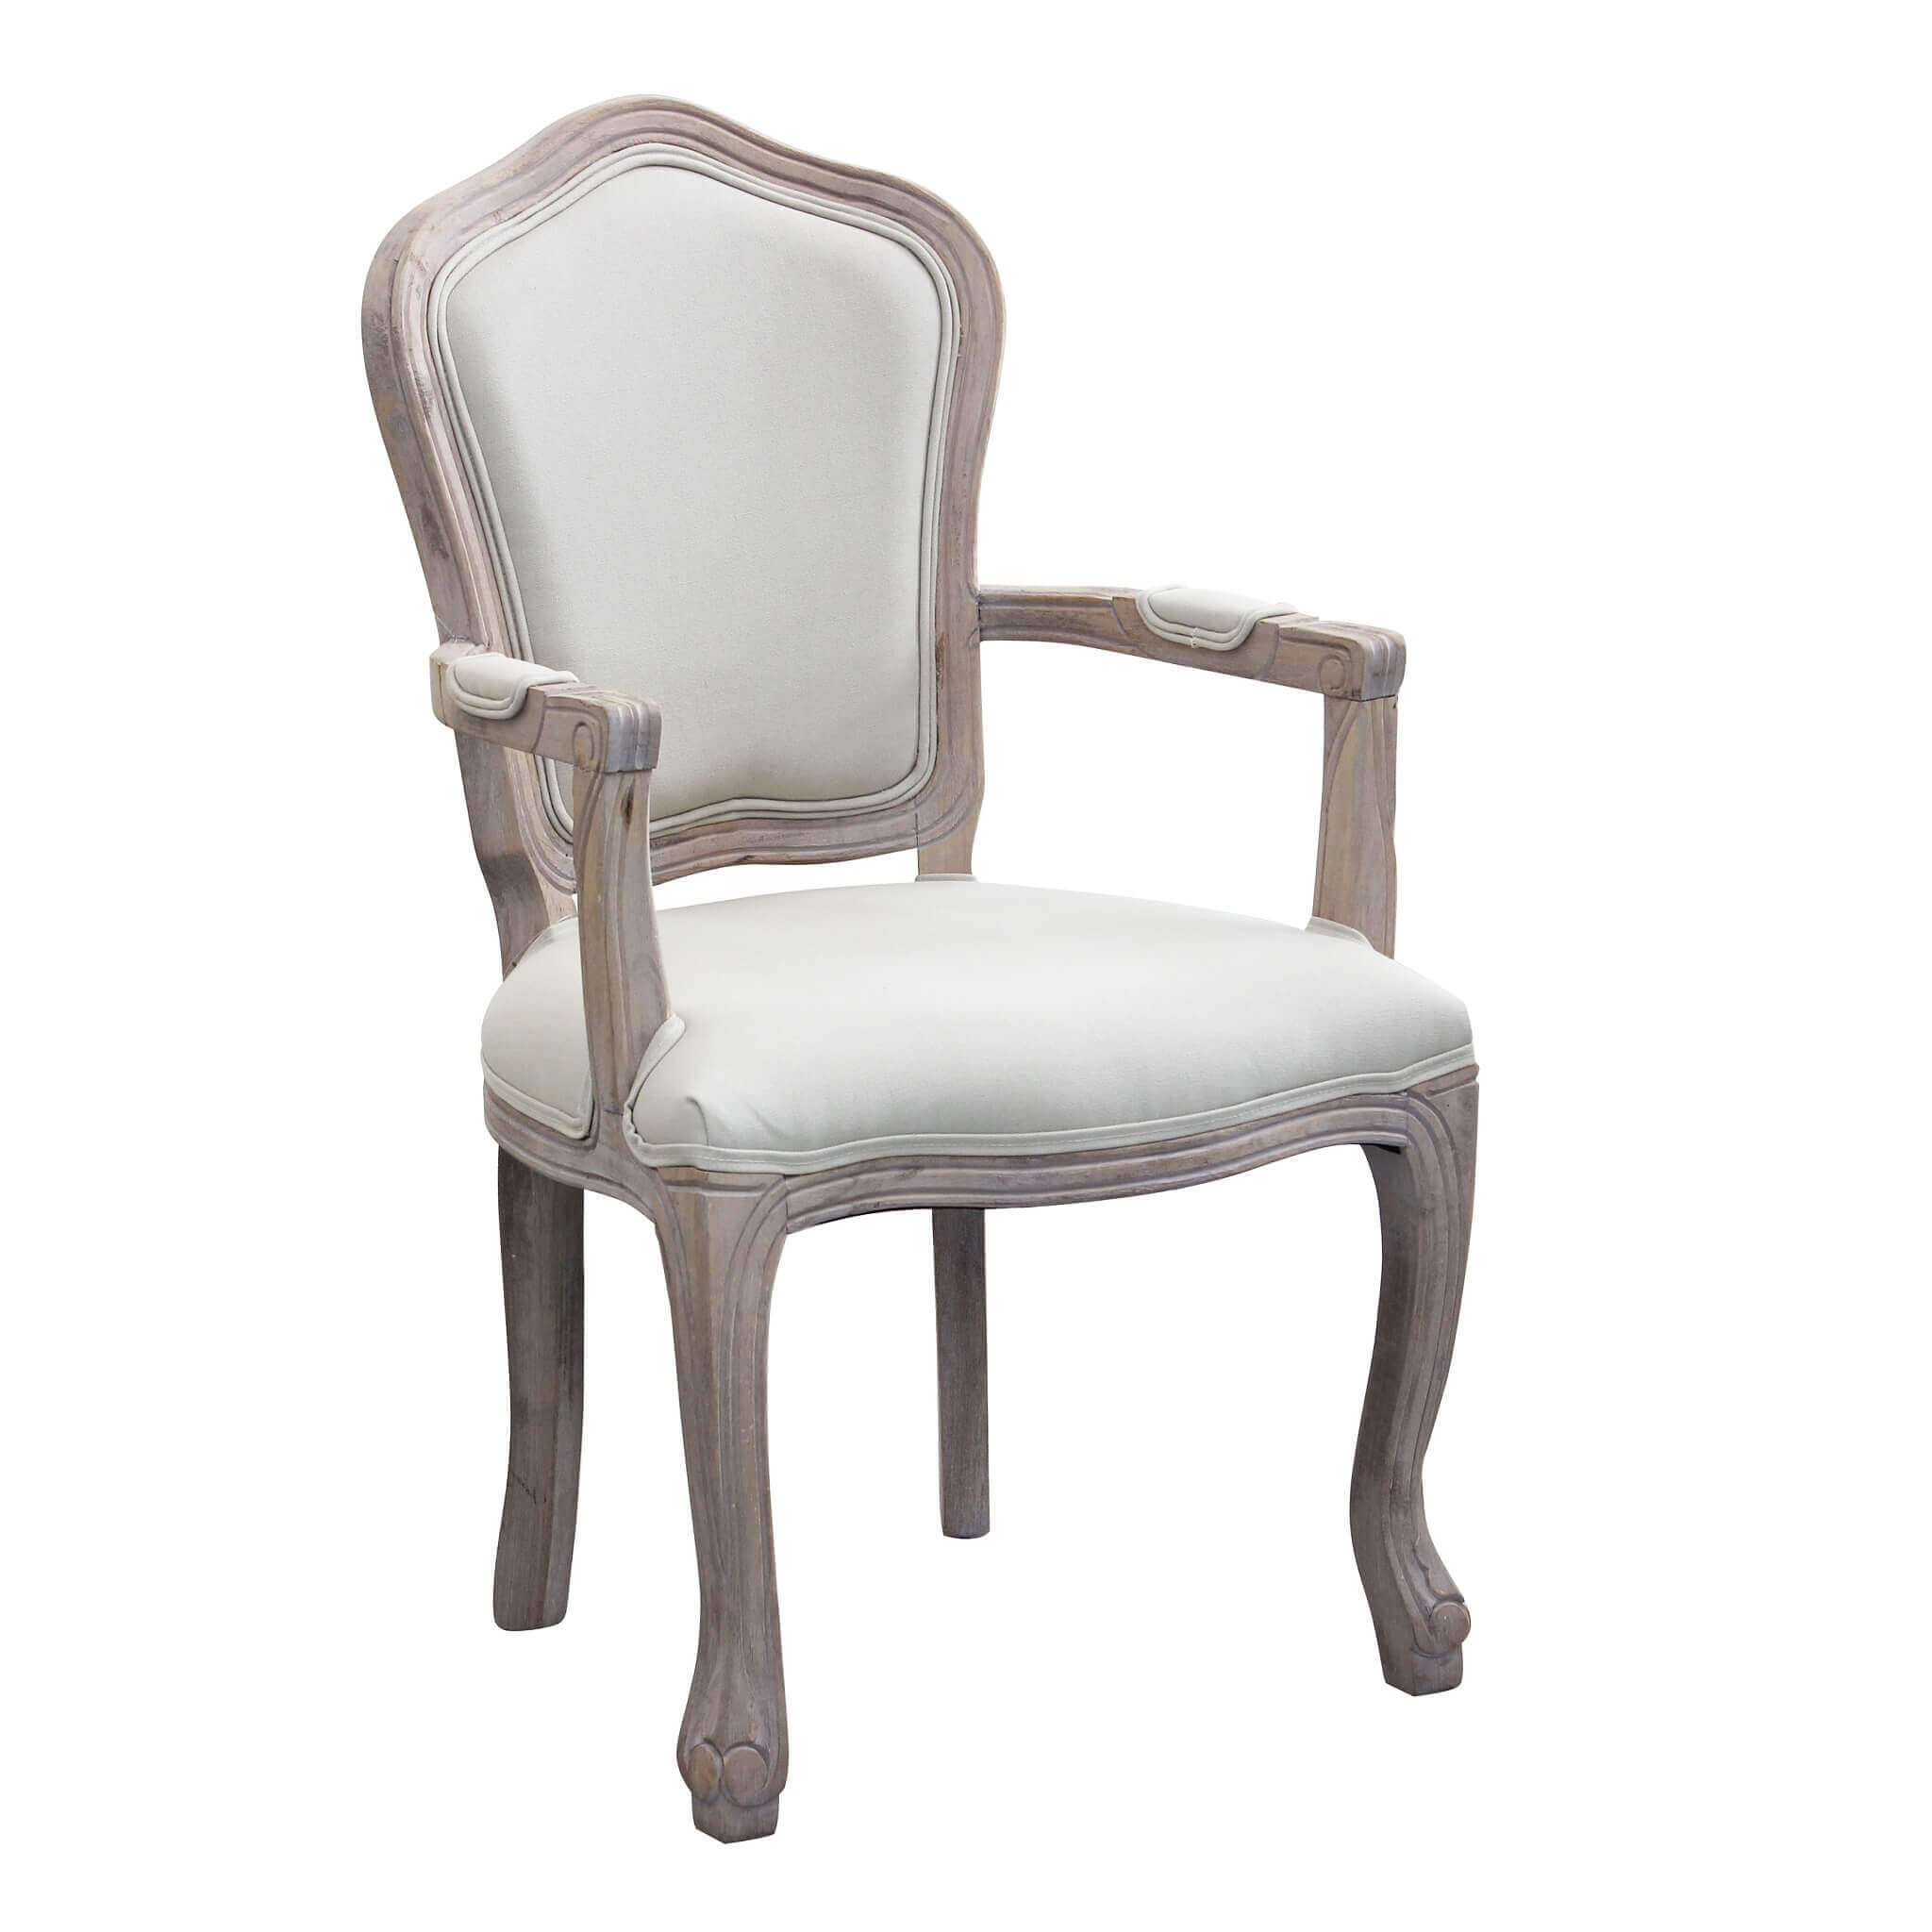 Milani Home sedia vintage in ecopelle di design inglese per salotto moderno Bianco 51 x 99 x 55 cm